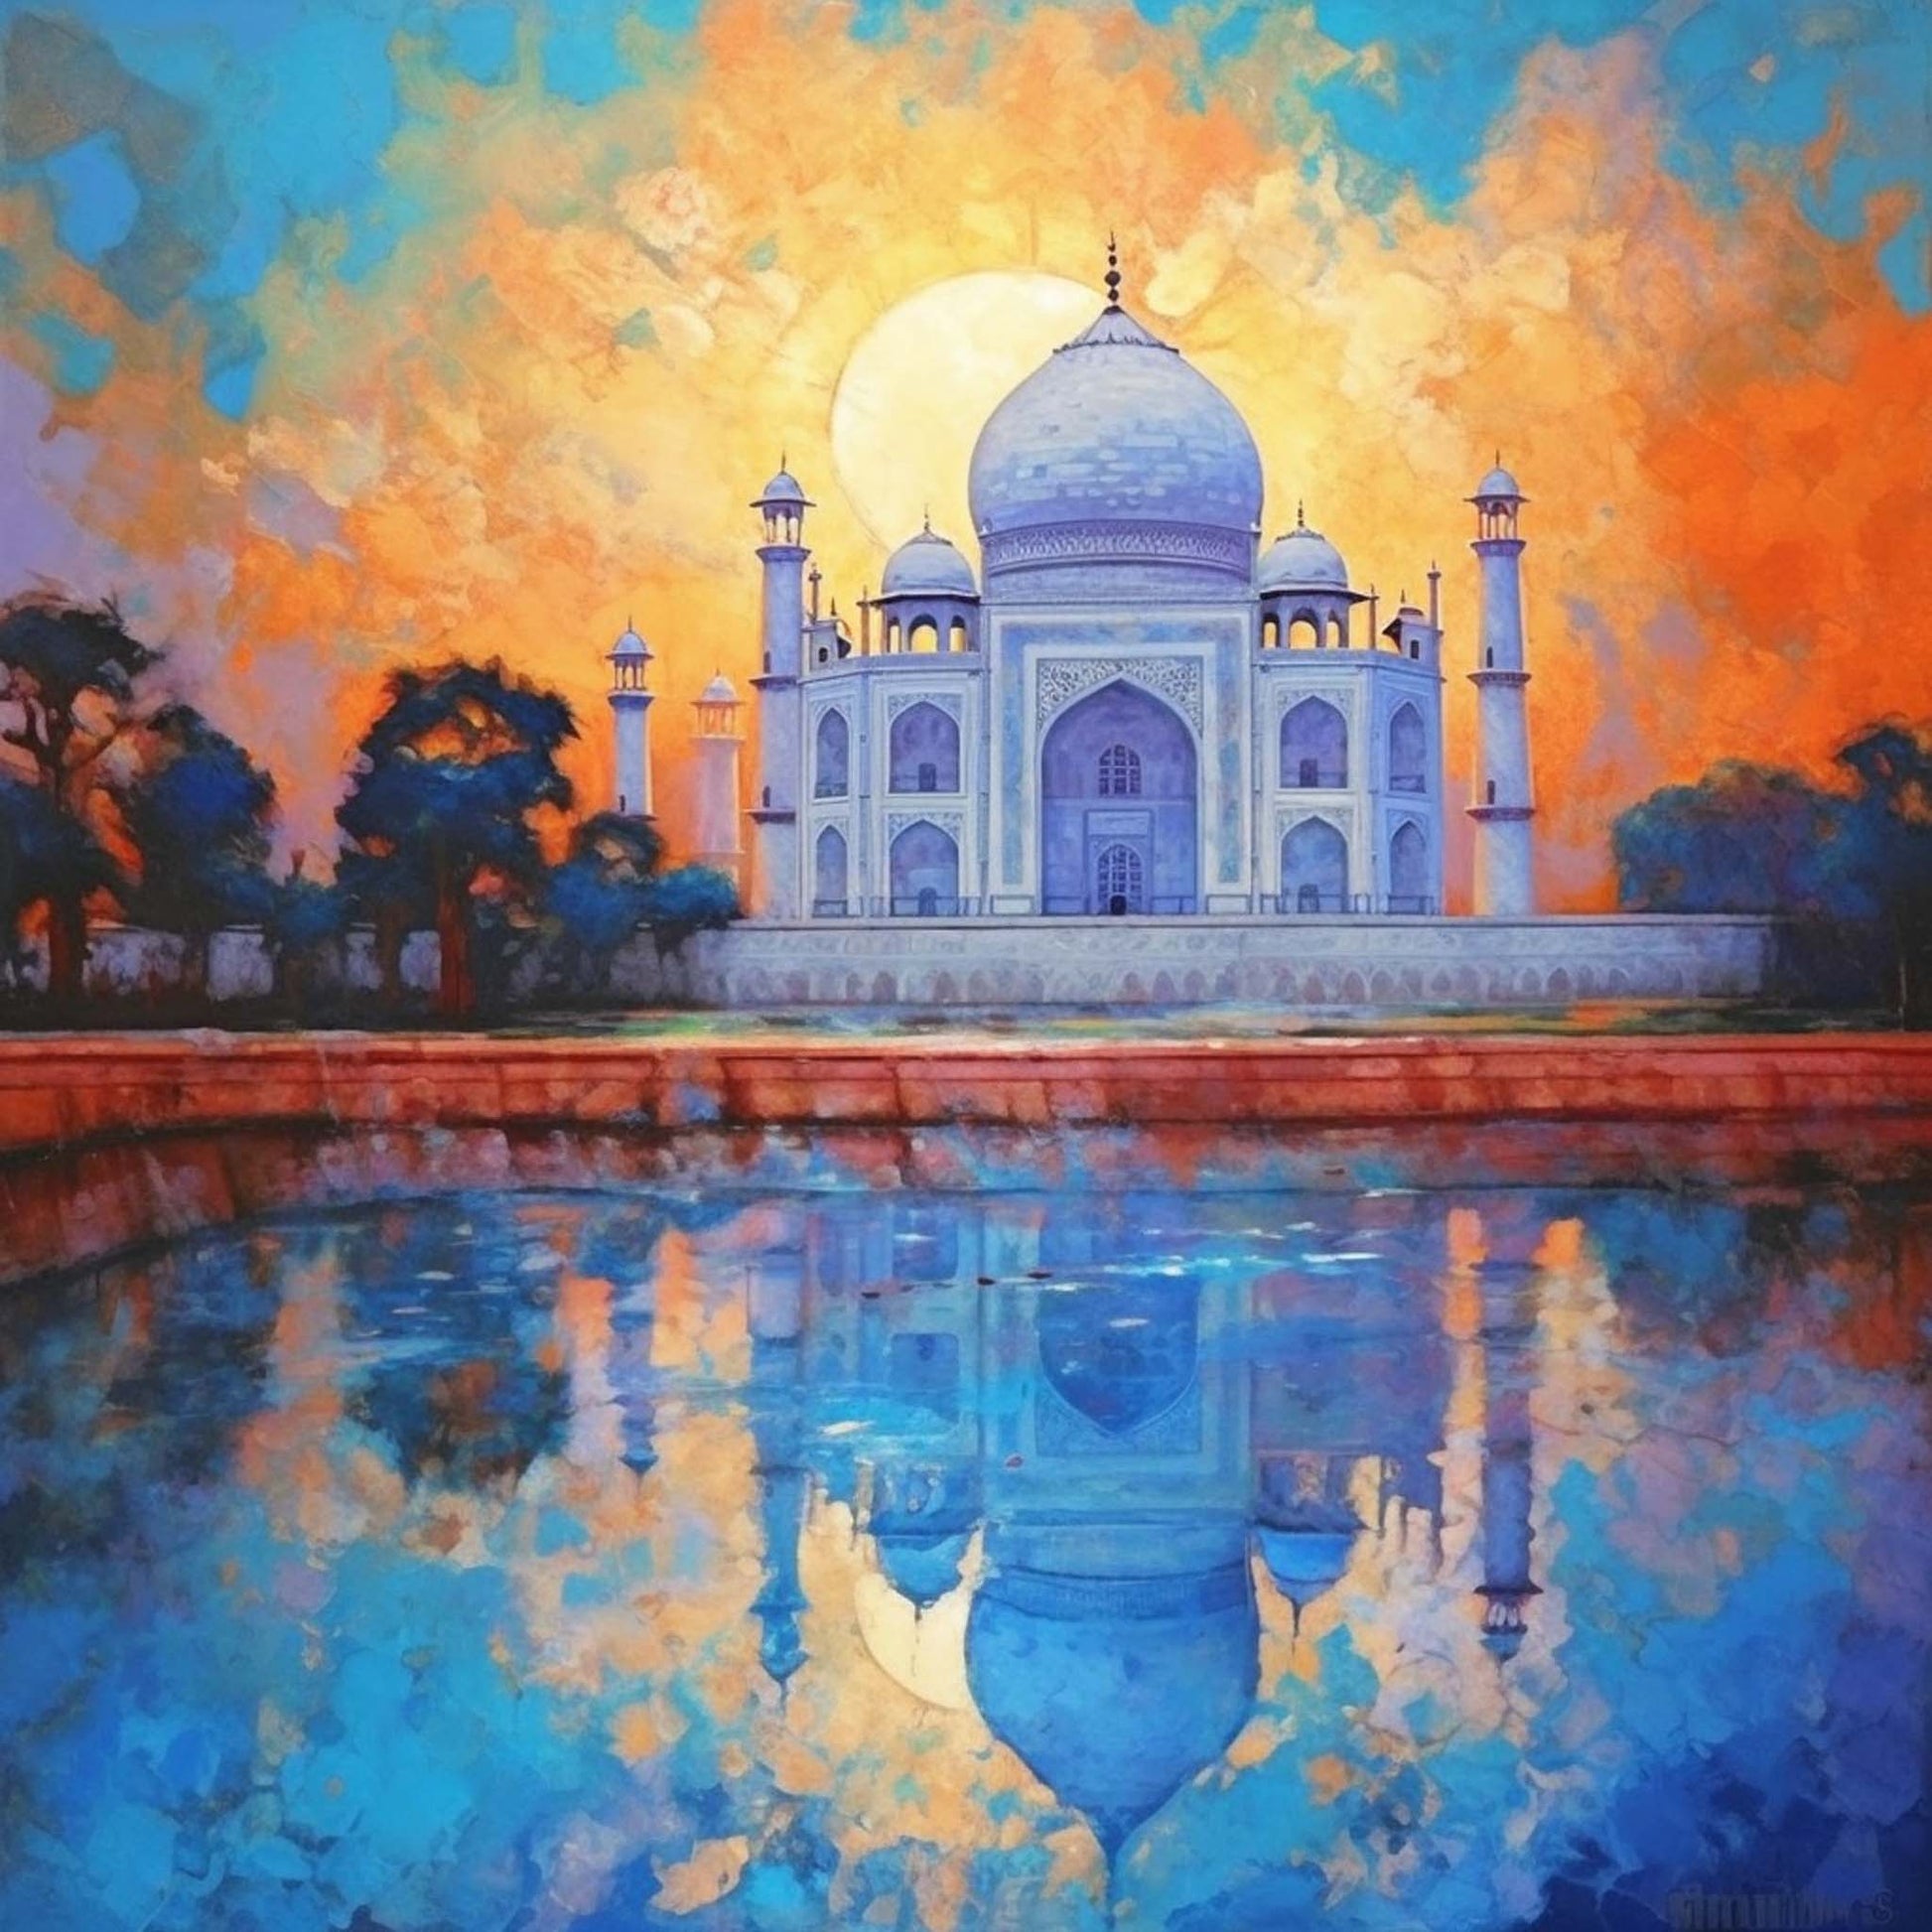 Urbanisto - Taj Mahal - Wandbild in der Stilrichtung des Impressionismus